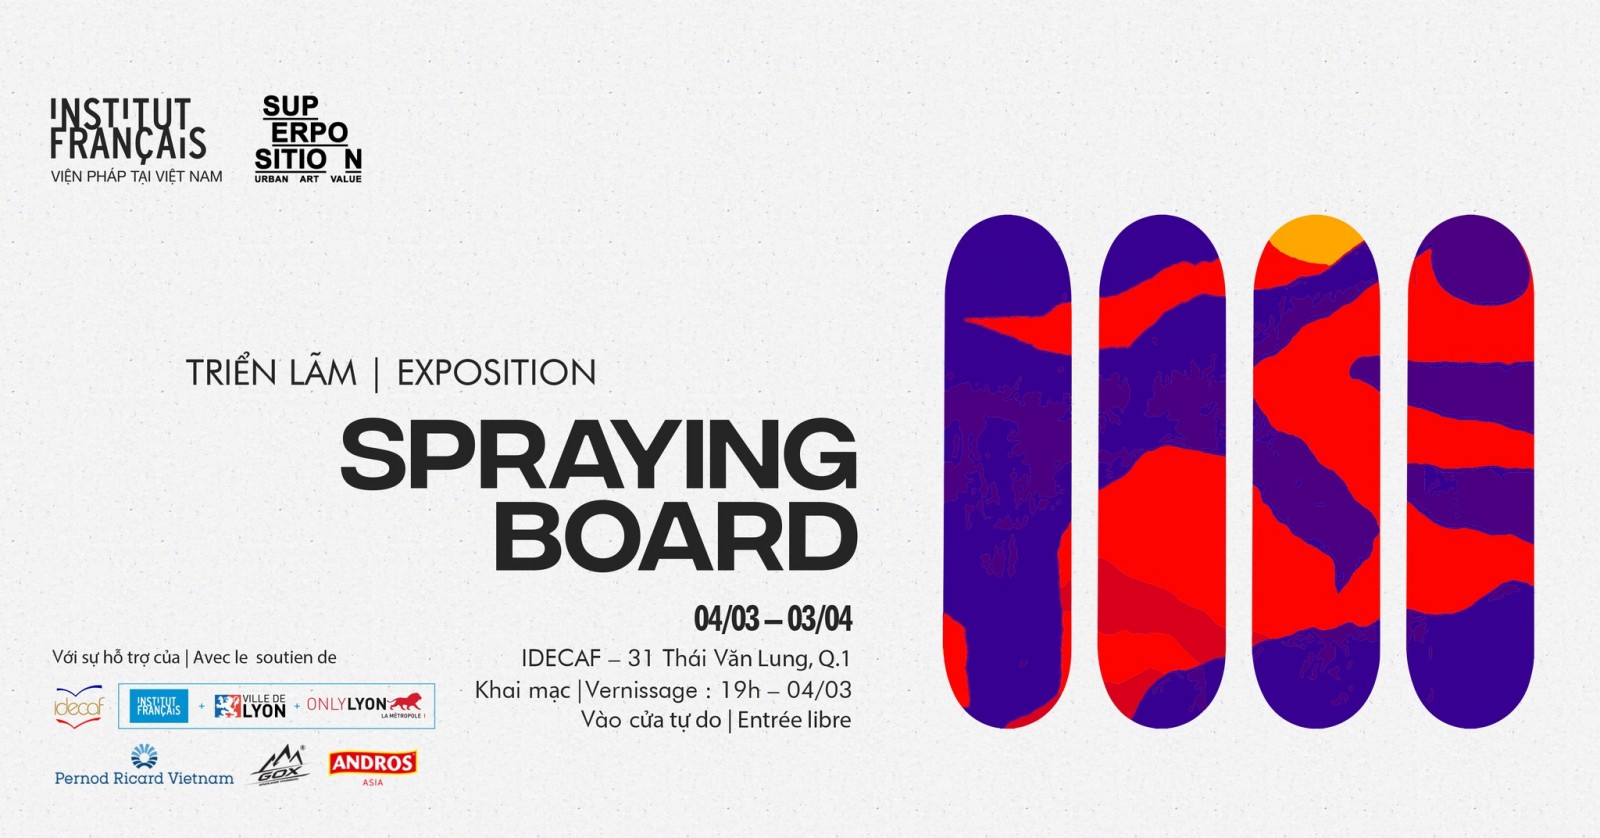 Spraying Board Vietnam - Triển lãm thể hiện sự giao thoa giữa trượt ván và nghệ thuật đường phố đầu tiên ở Châu Á